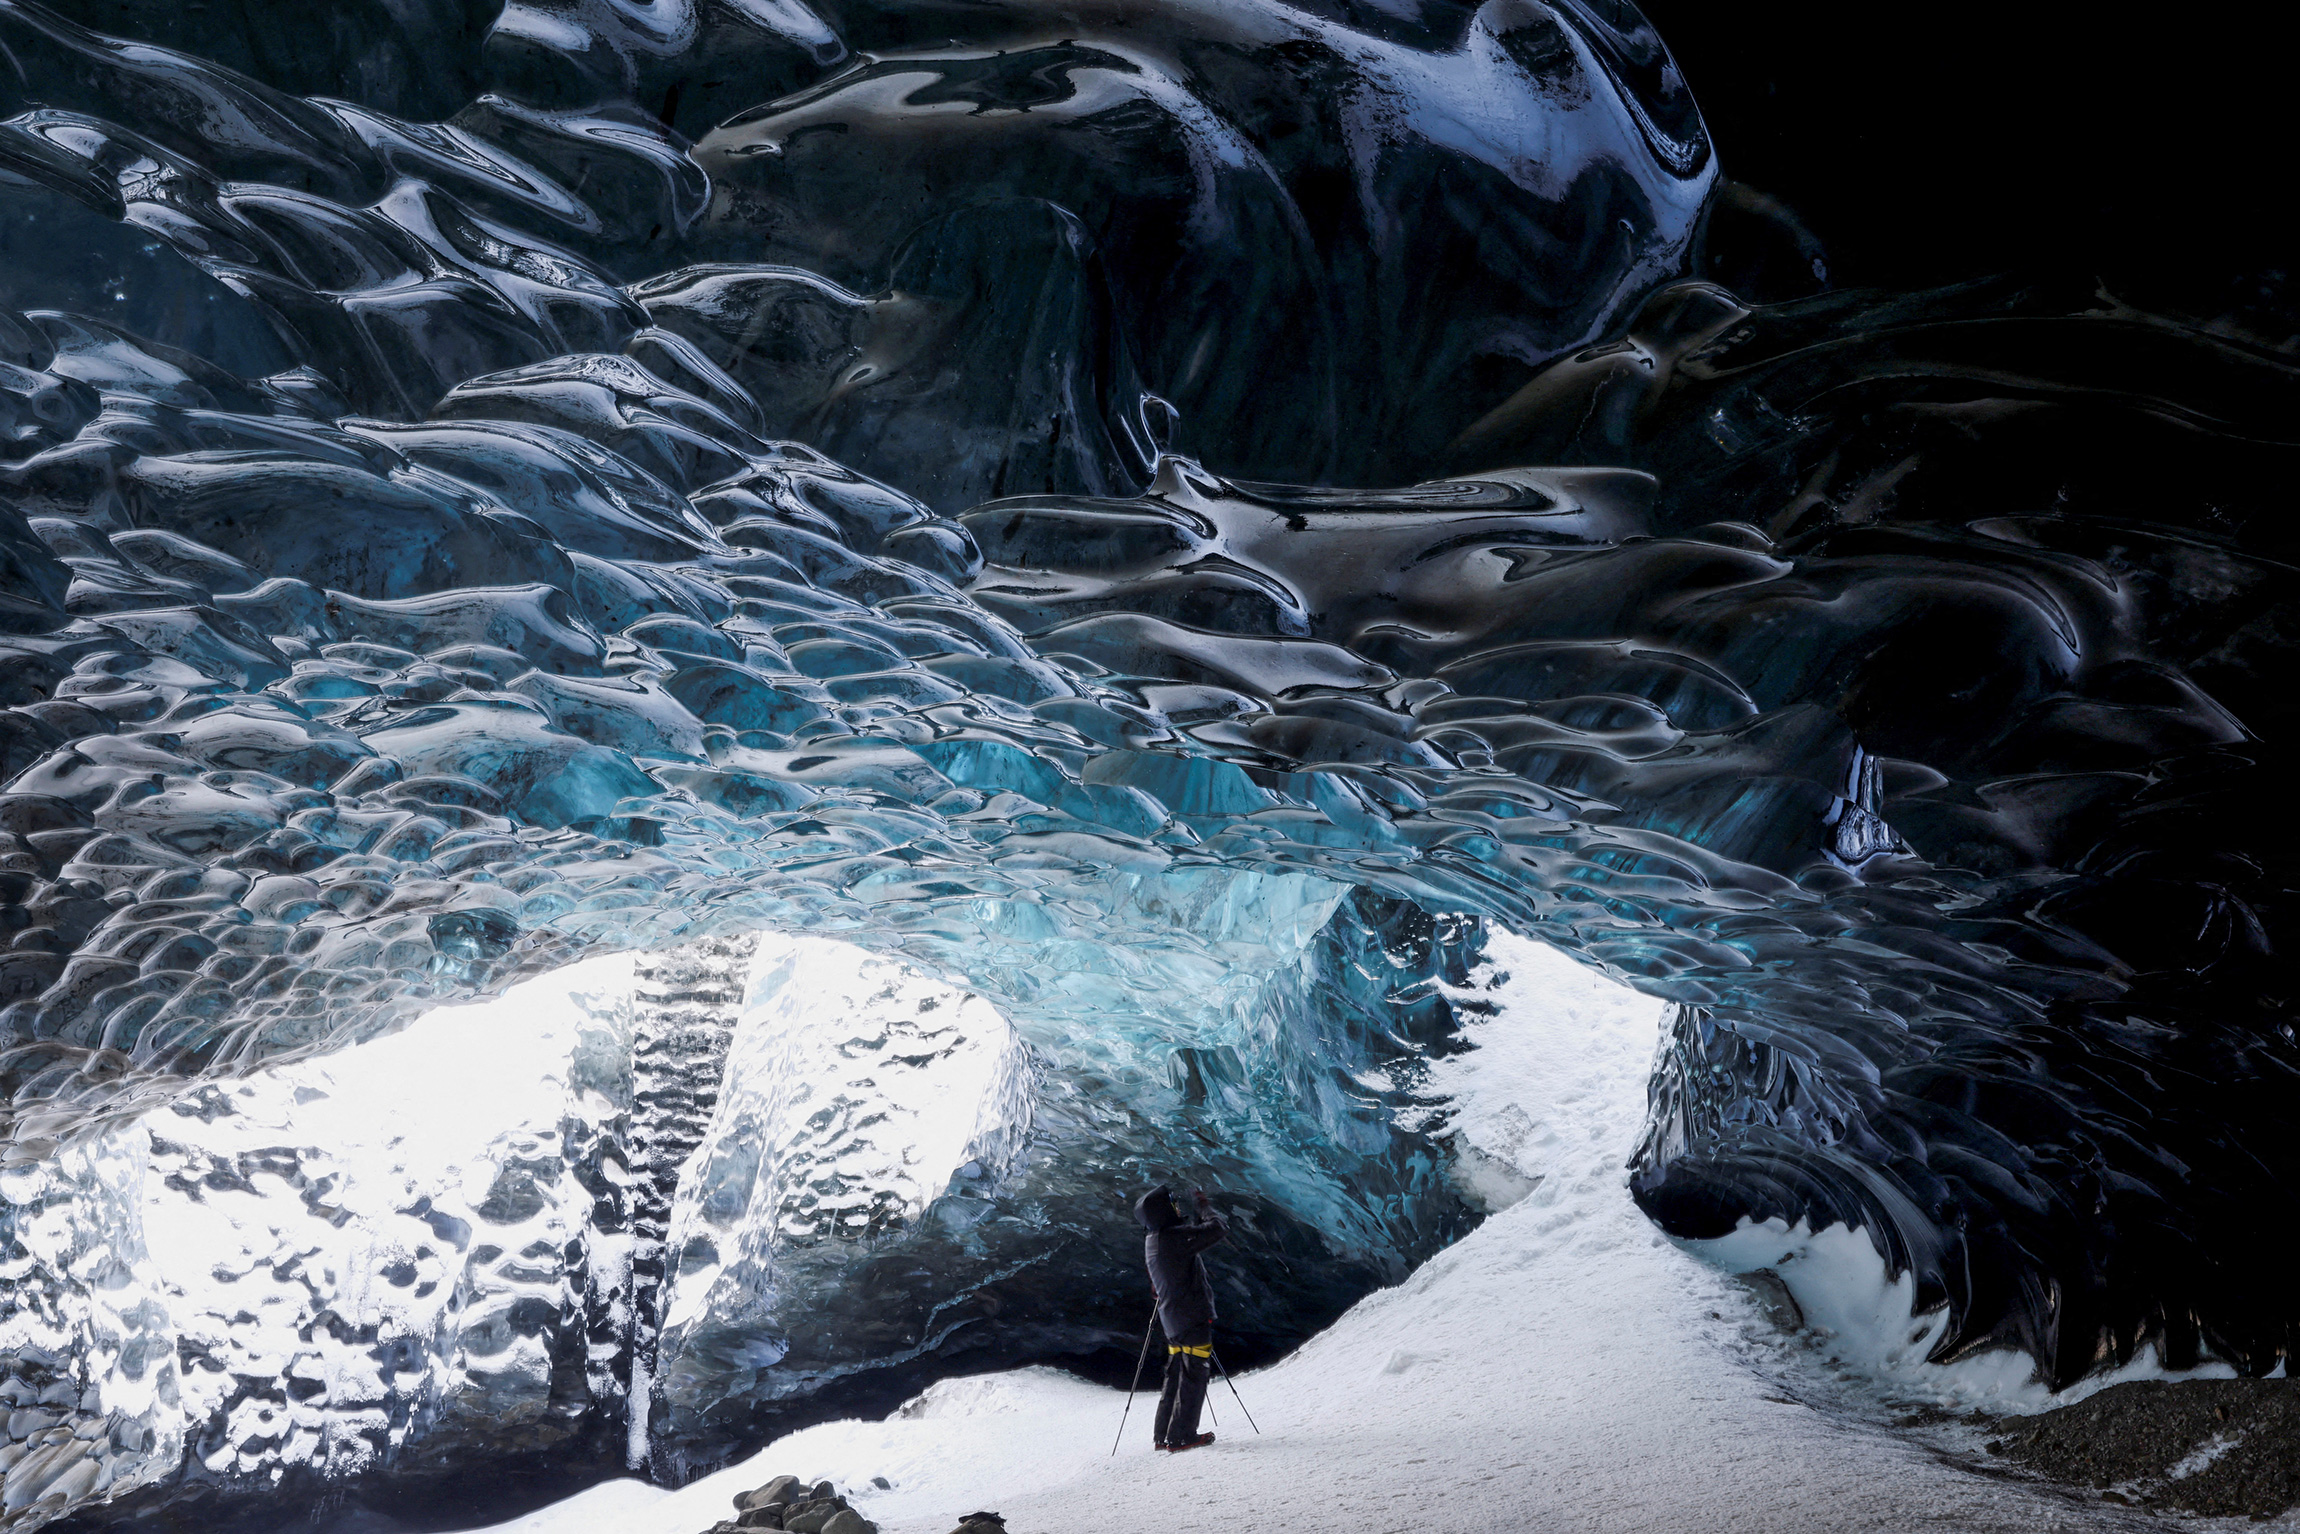 На фото: ледяная пещера в ледниковой лагуне Йокульсарлон на южном побережье Исландии, 17 февраля.

Глобальное потепление вызывает таяние ледников, но массивная зона прохладной воды в северной части Атлантического океана, которую назвали &laquo;голубой каплей&raquo;, замедляет этот процесс в Исландии. Согласно новому исследованию, &laquo;голубая капля&raquo; сможет просуществовать в течение нескольких десятилетий, прежде чем общая тенденция к потеплению снова возьмет верх